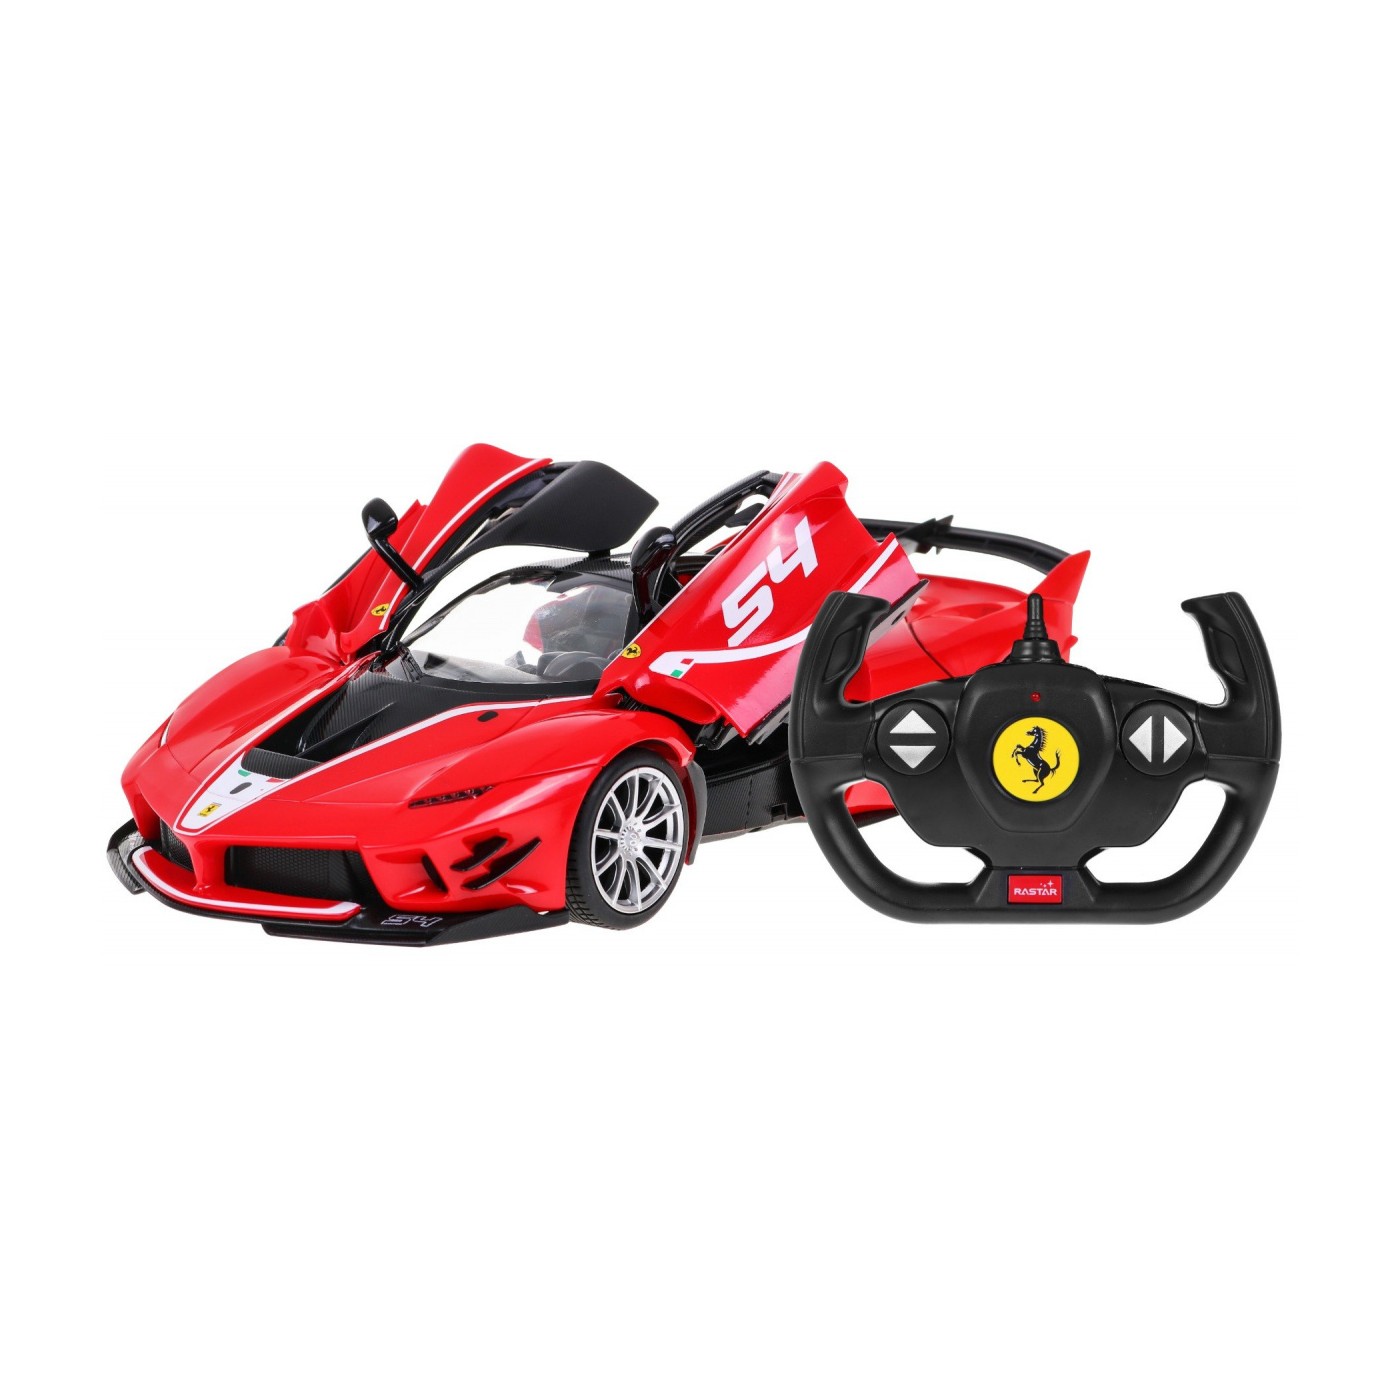 Toy car R/C Ferrari FXX K EVO 1:14 RASTAR